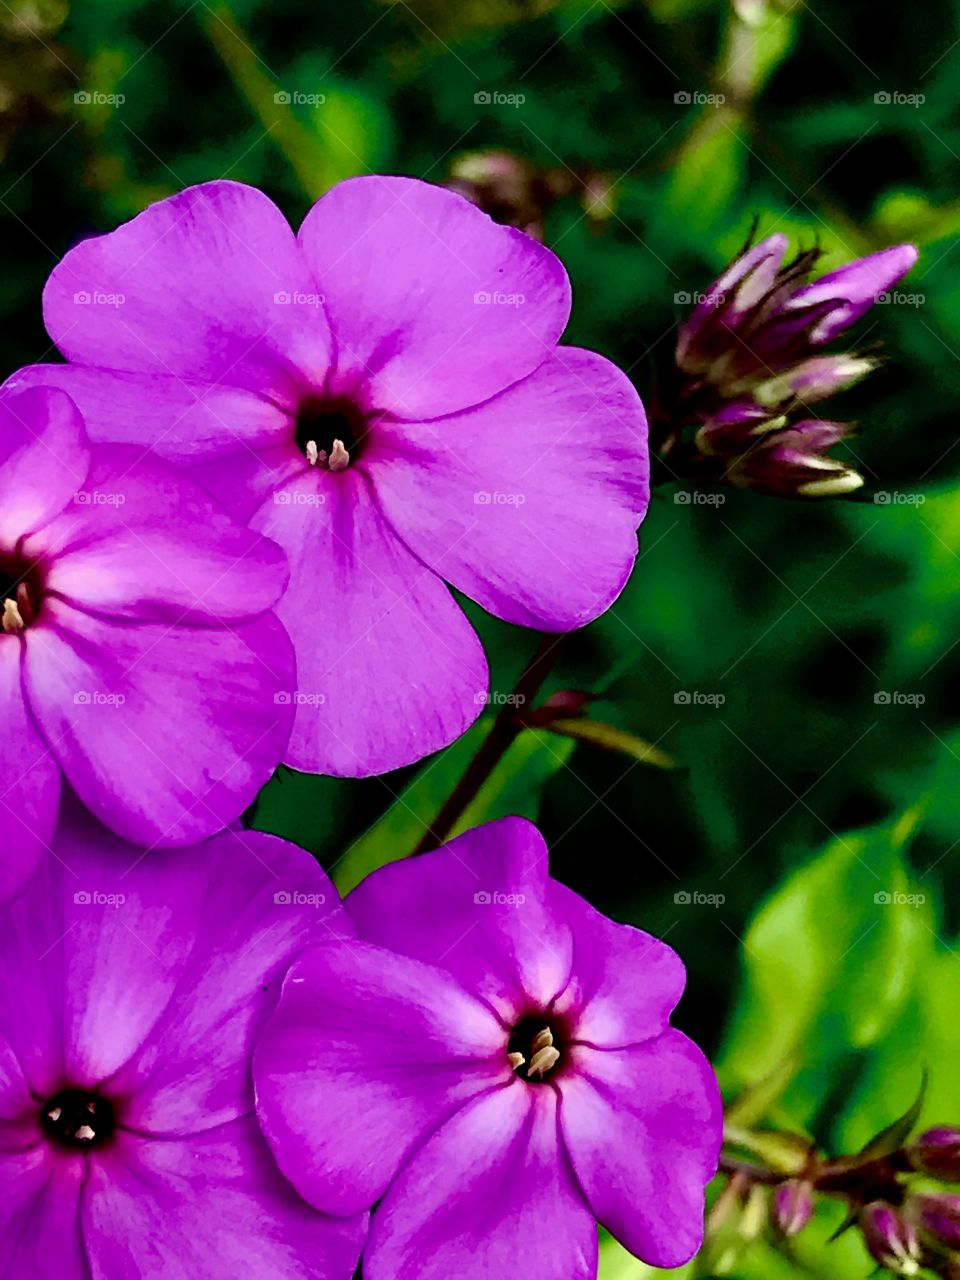 Vivid purple flowers